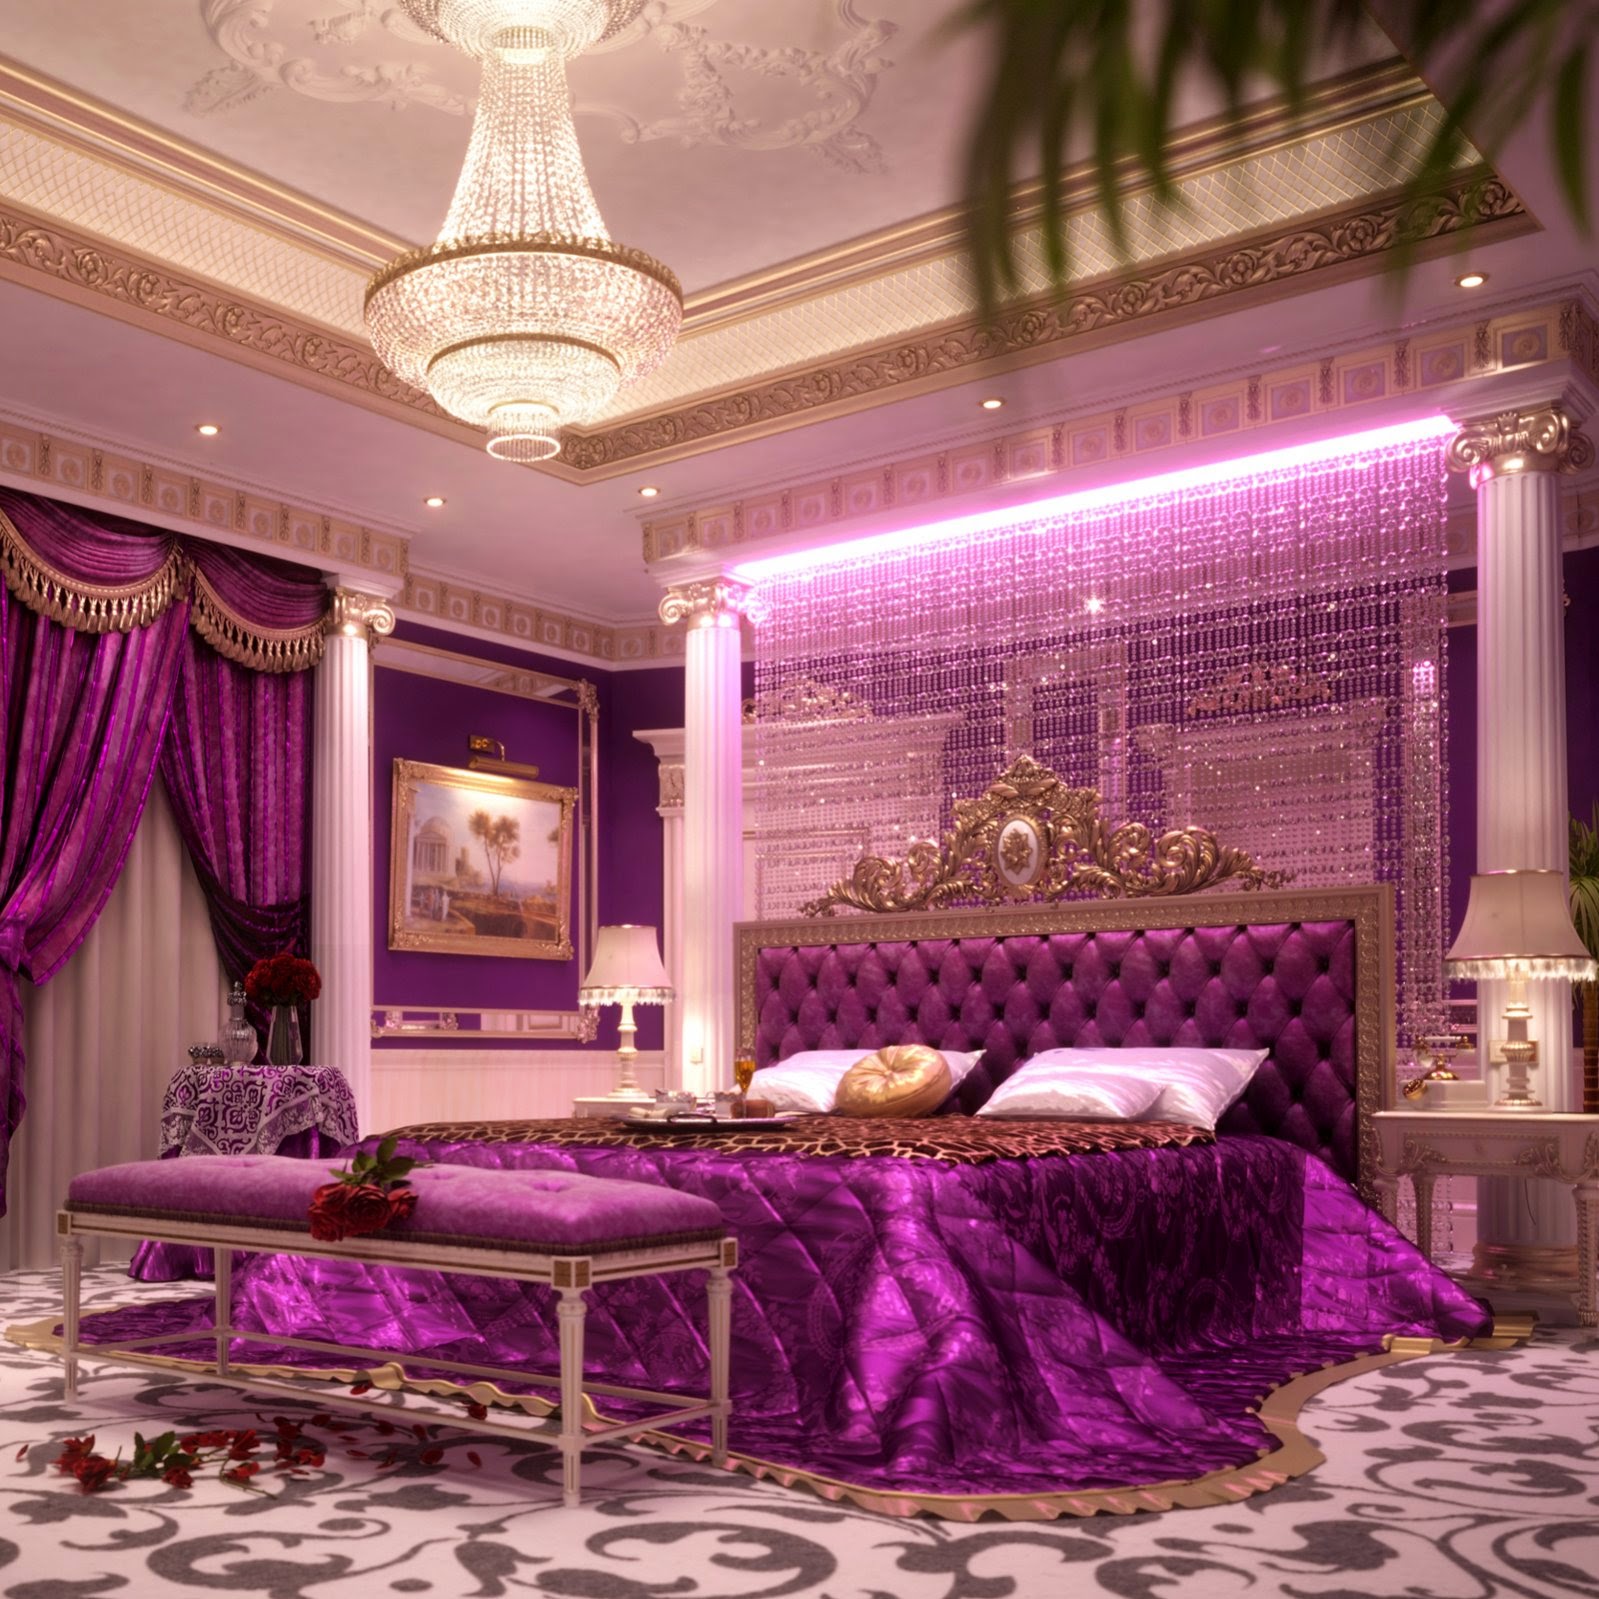 Image result for royal bedroom | Master - Burgundy | Pinterest ...